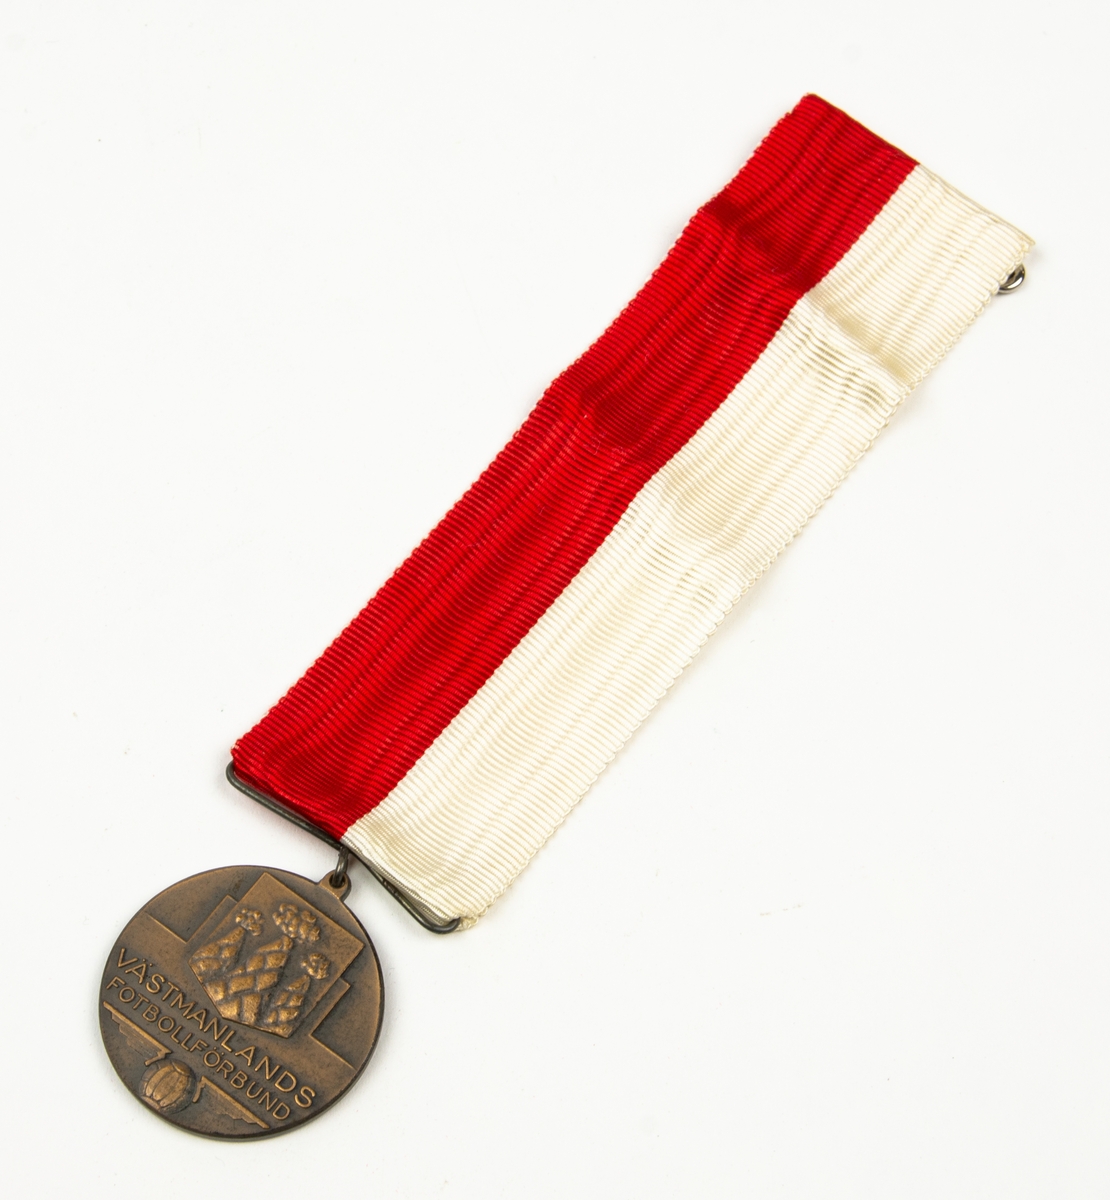 Medalj med band i vitt och rött. På medaljens ena sida finns en sköld med tre milor. Under skölden finns texten: VÄSTMANLANDS FOTBOLLSFÖRBUND På medaljens andra sida finns texten: DIV. 7 V:ÅS GRUPPEN 1955.